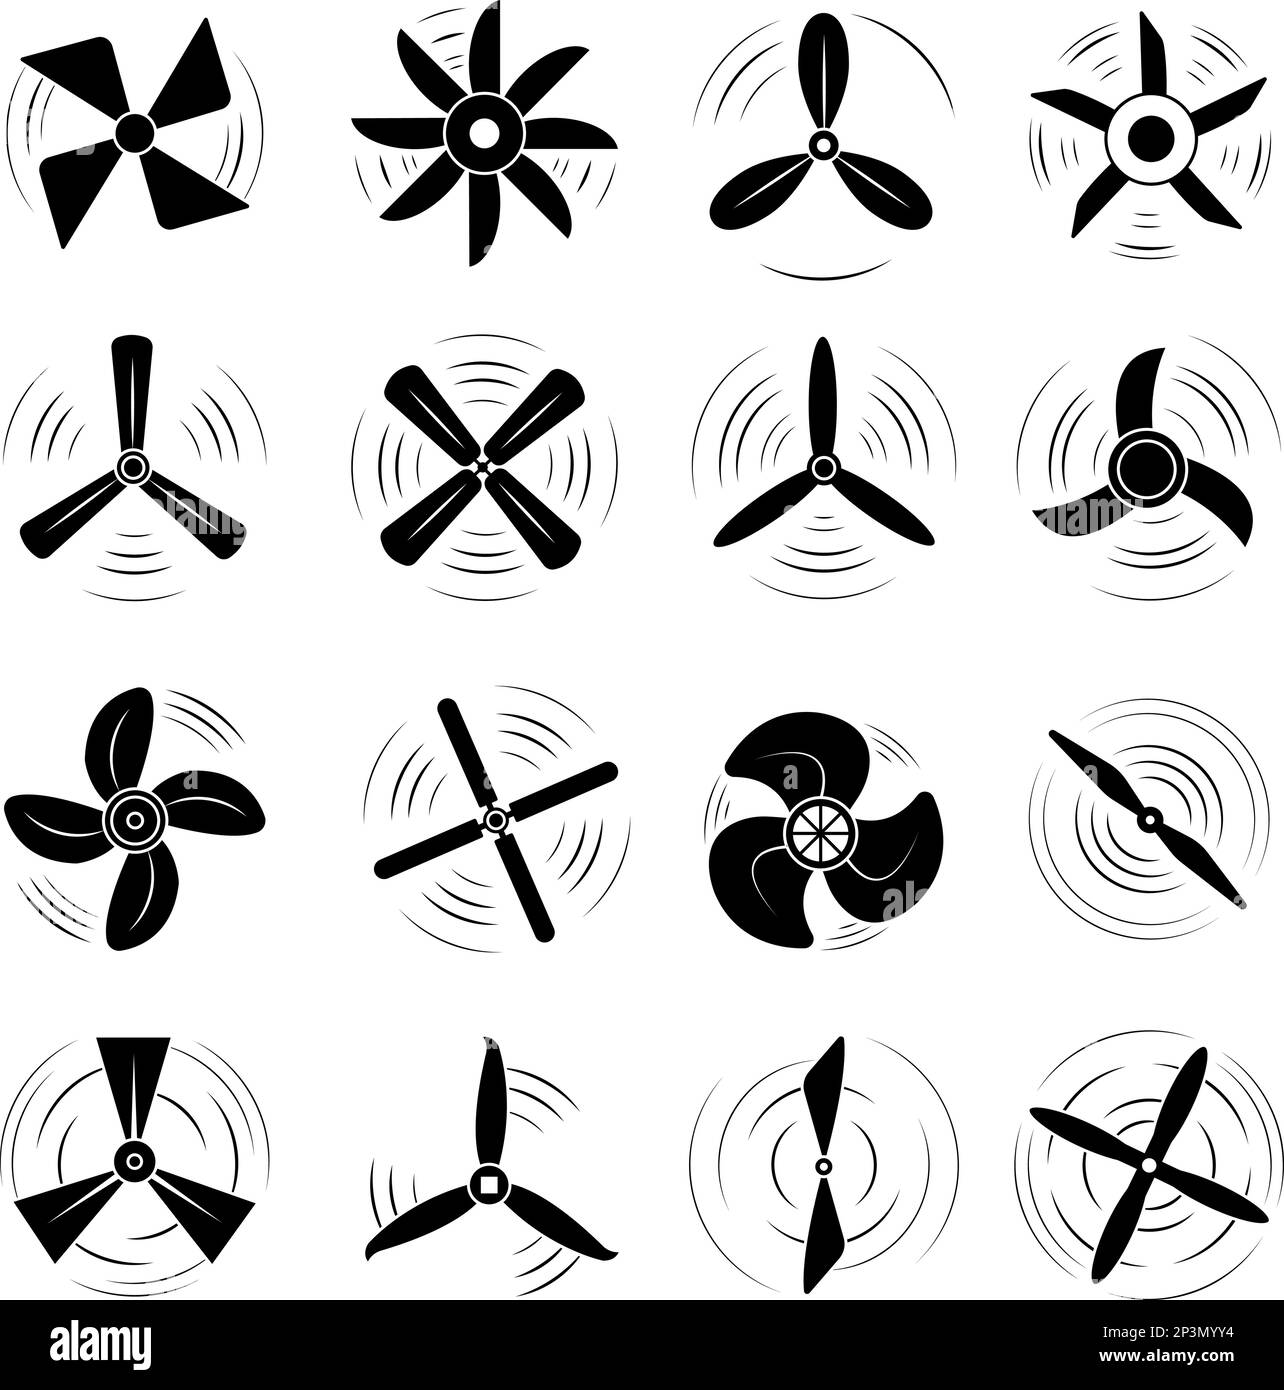 Simboli neri delle eliche degli aerei. Elementi della pala dell'elica, motore a rotazione. Logo vettoriali decent a rotazione della turbina, a ventola elettrica o a vite marina Illustrazione Vettoriale